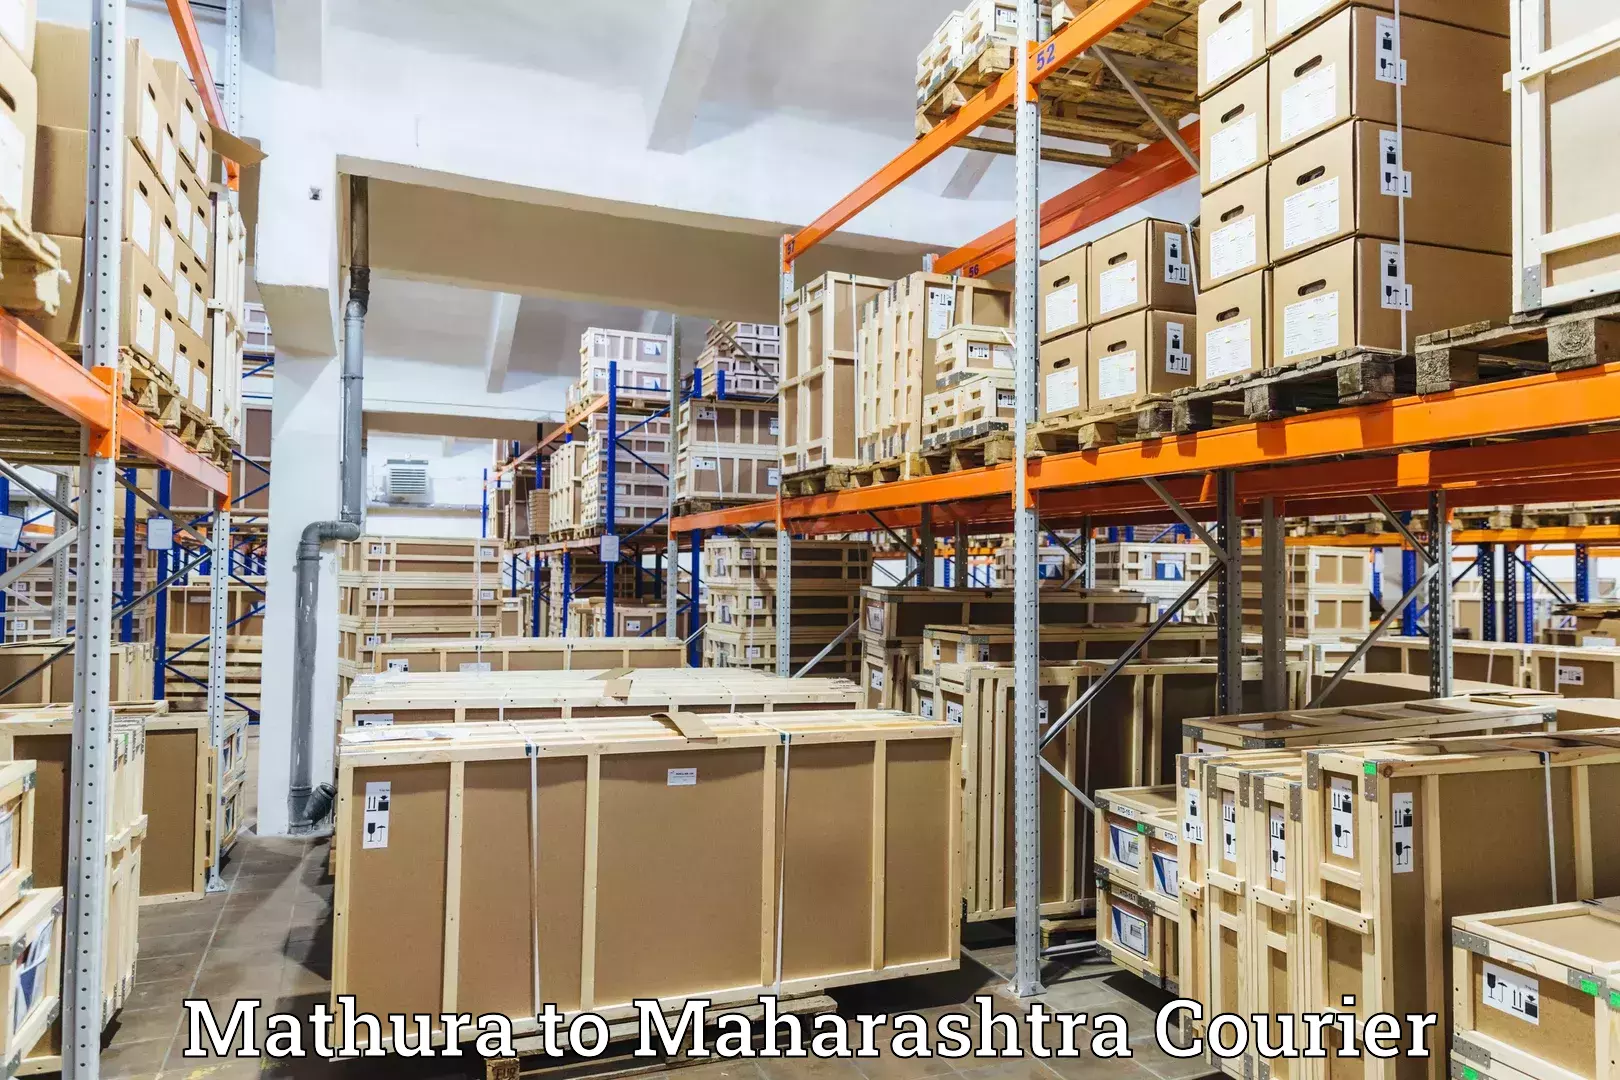 Courier services Mathura to Ulhasnagar